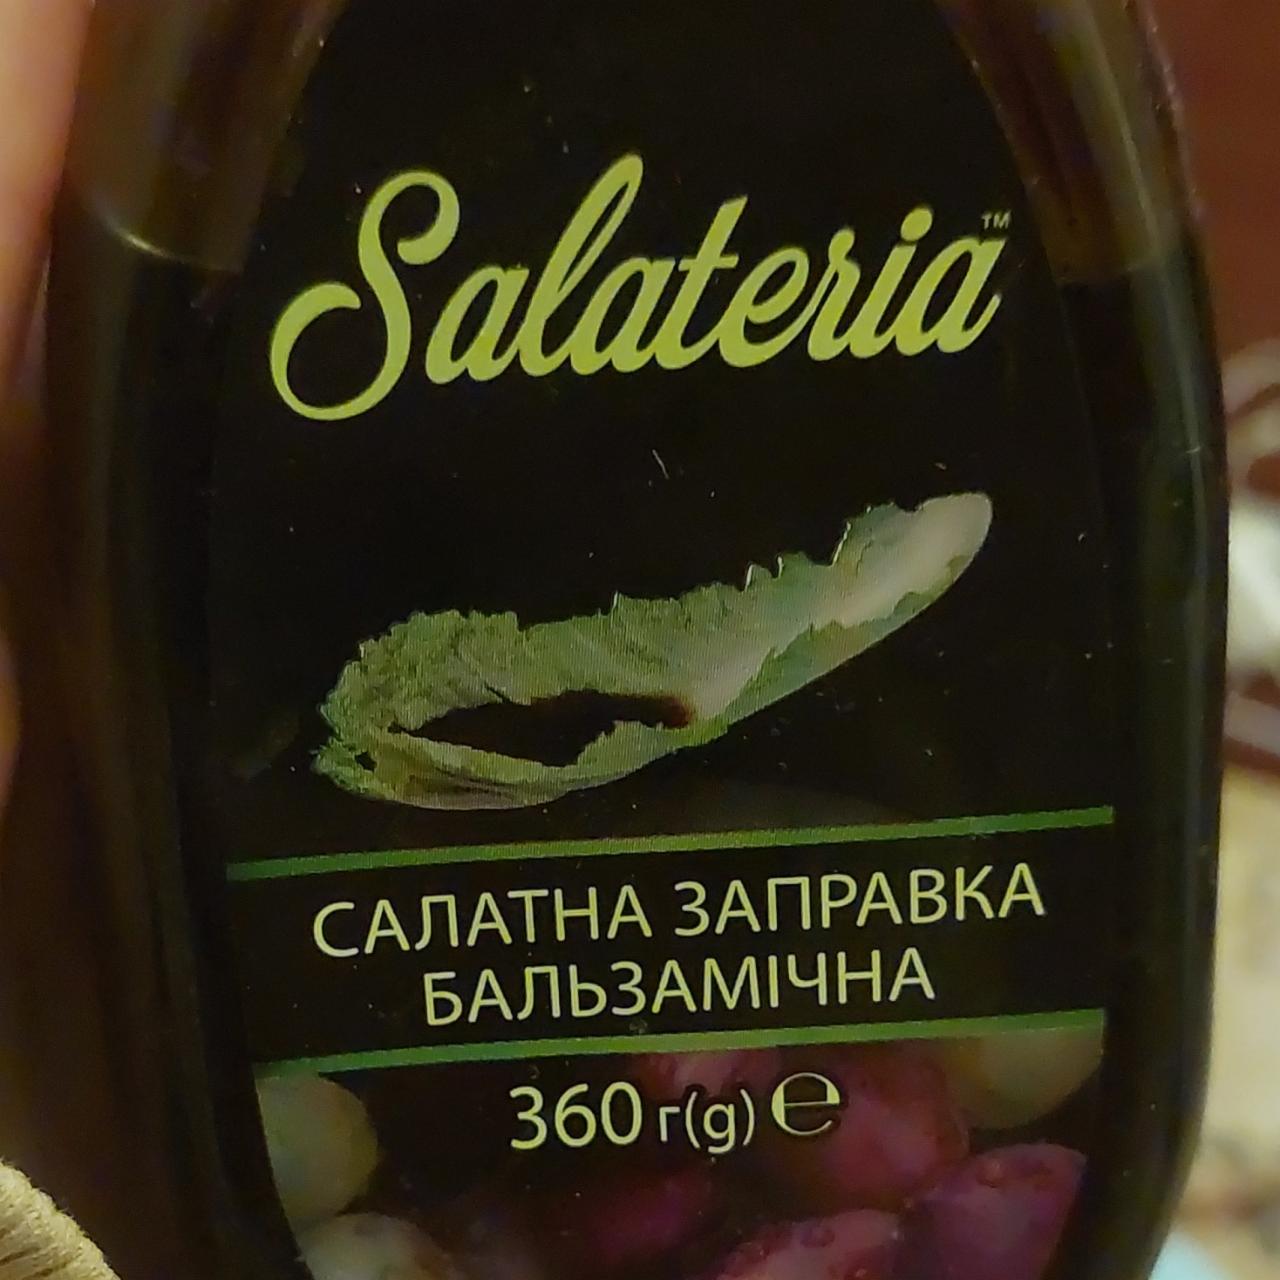 Фото - салатная заправка бальзамическая Salateria